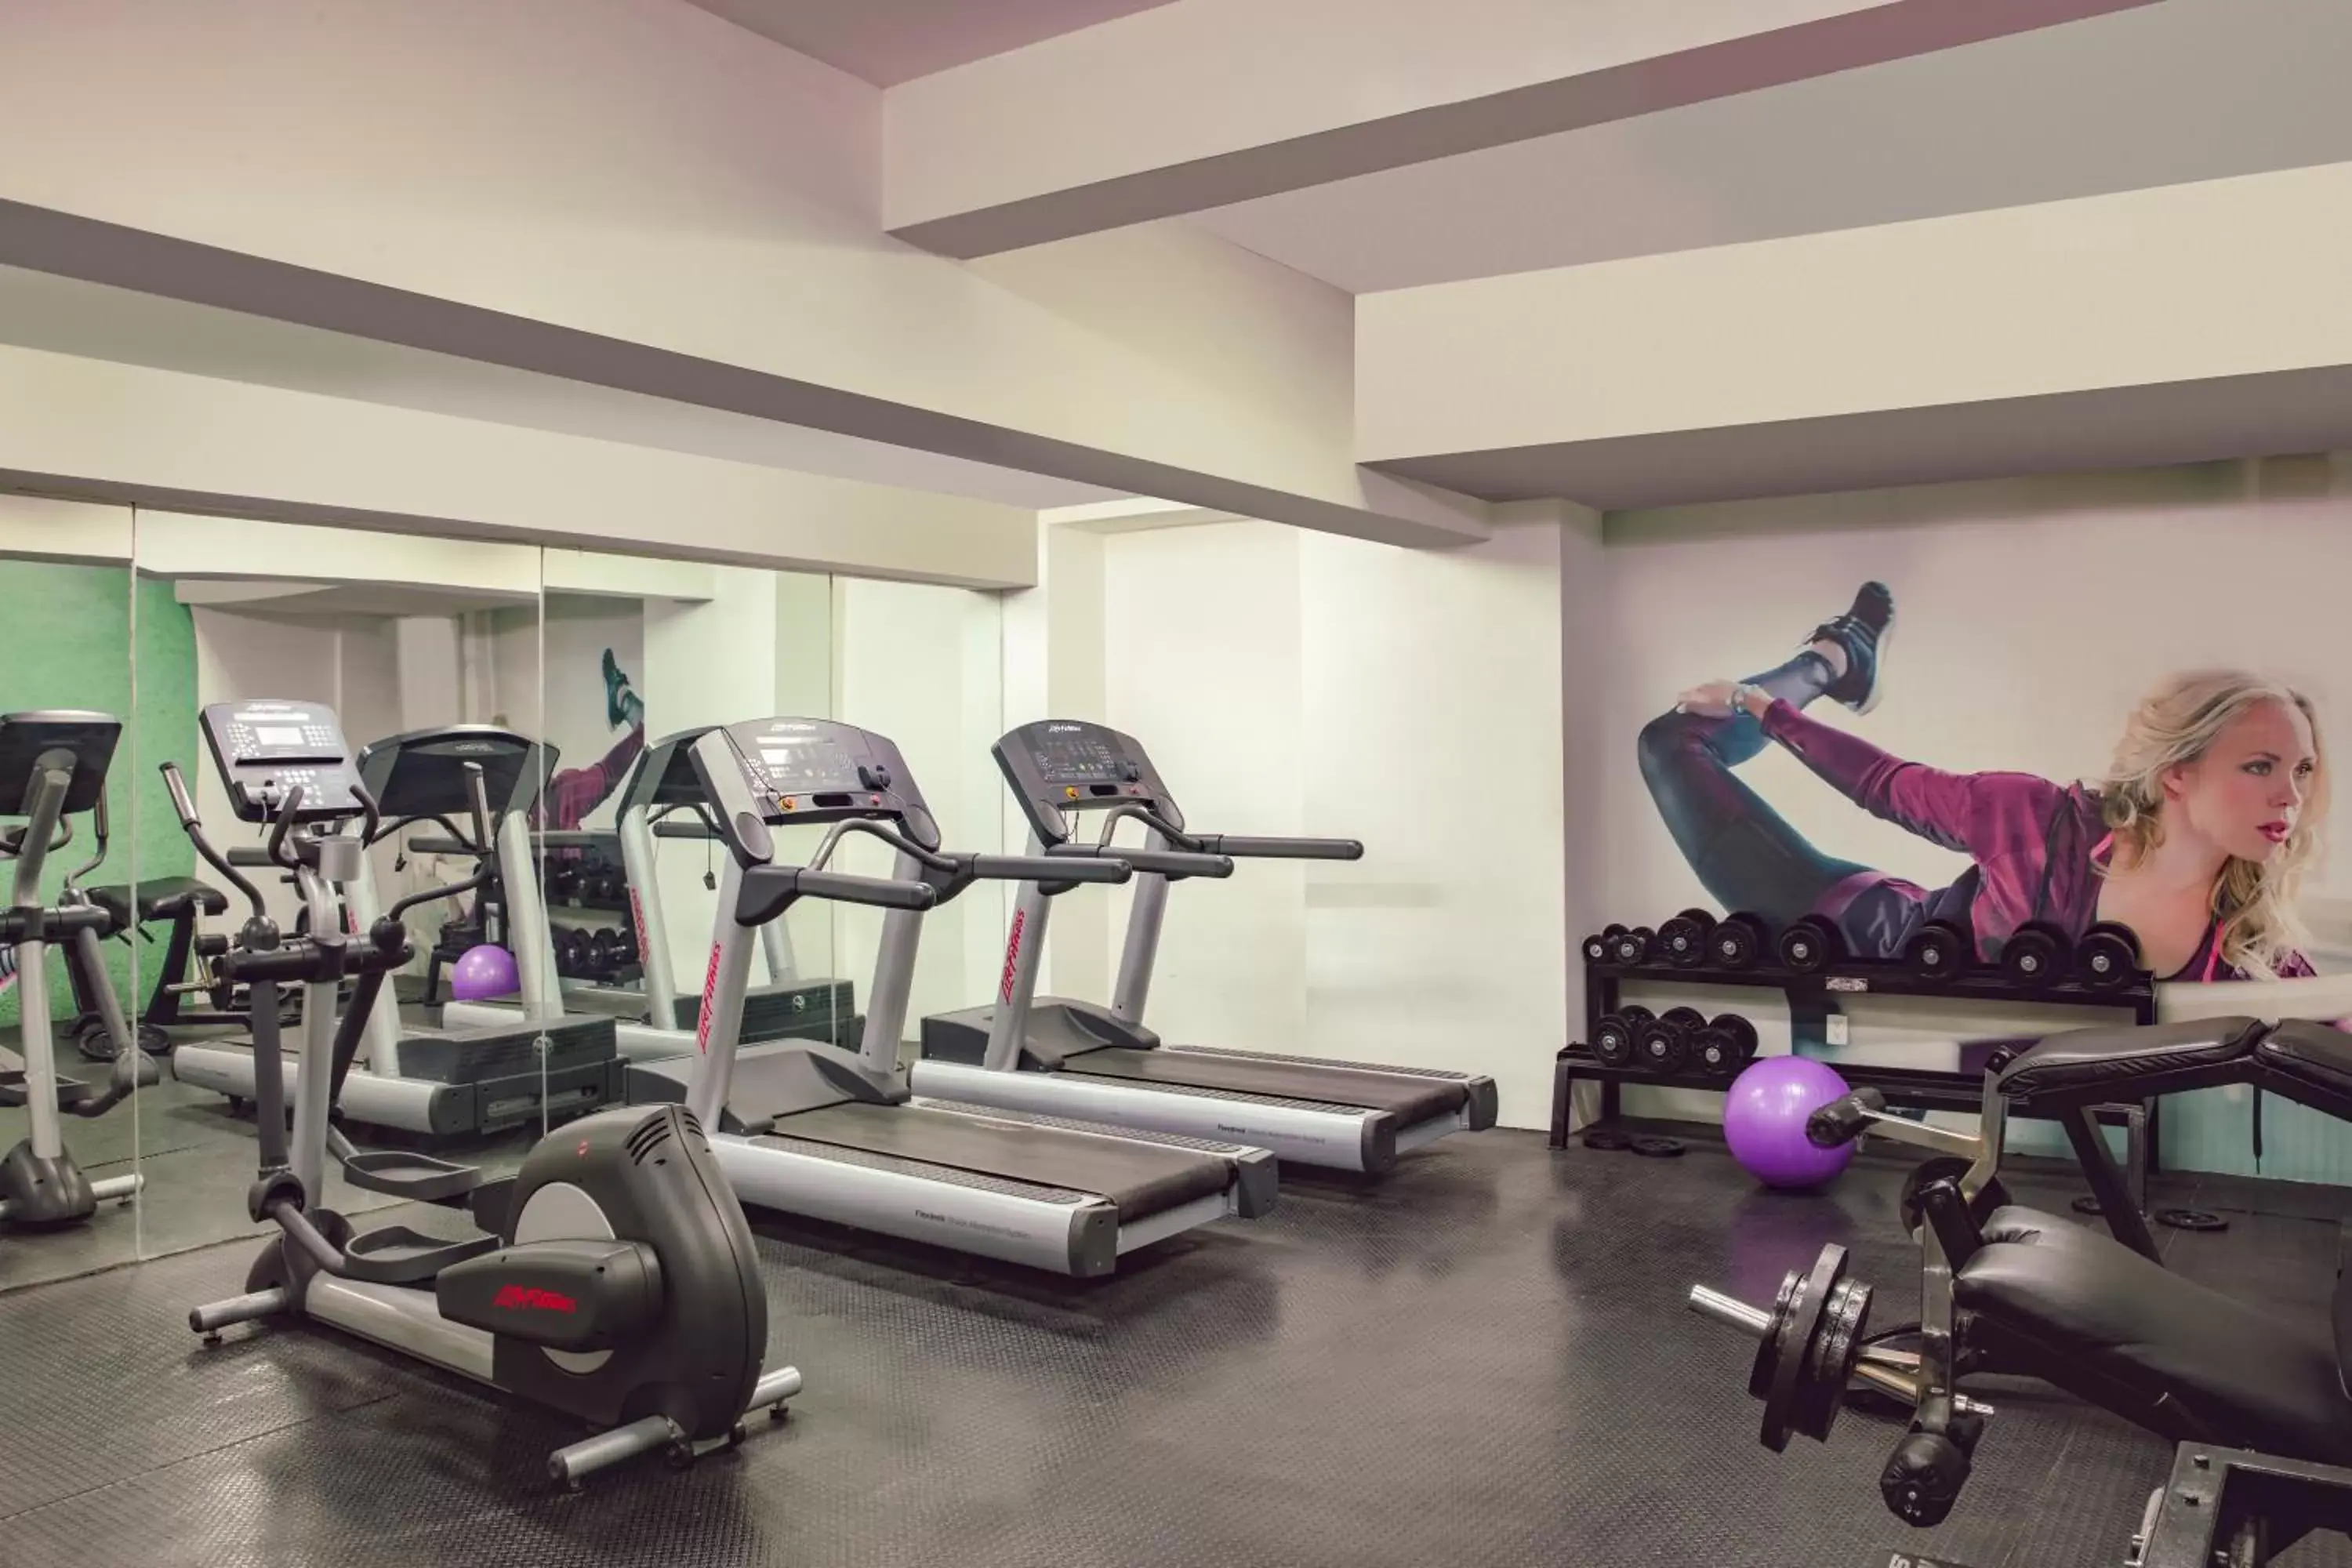 Fitness centre/facilities, Fitness Center/Facilities in Gamma Guadalajara Centro Historico